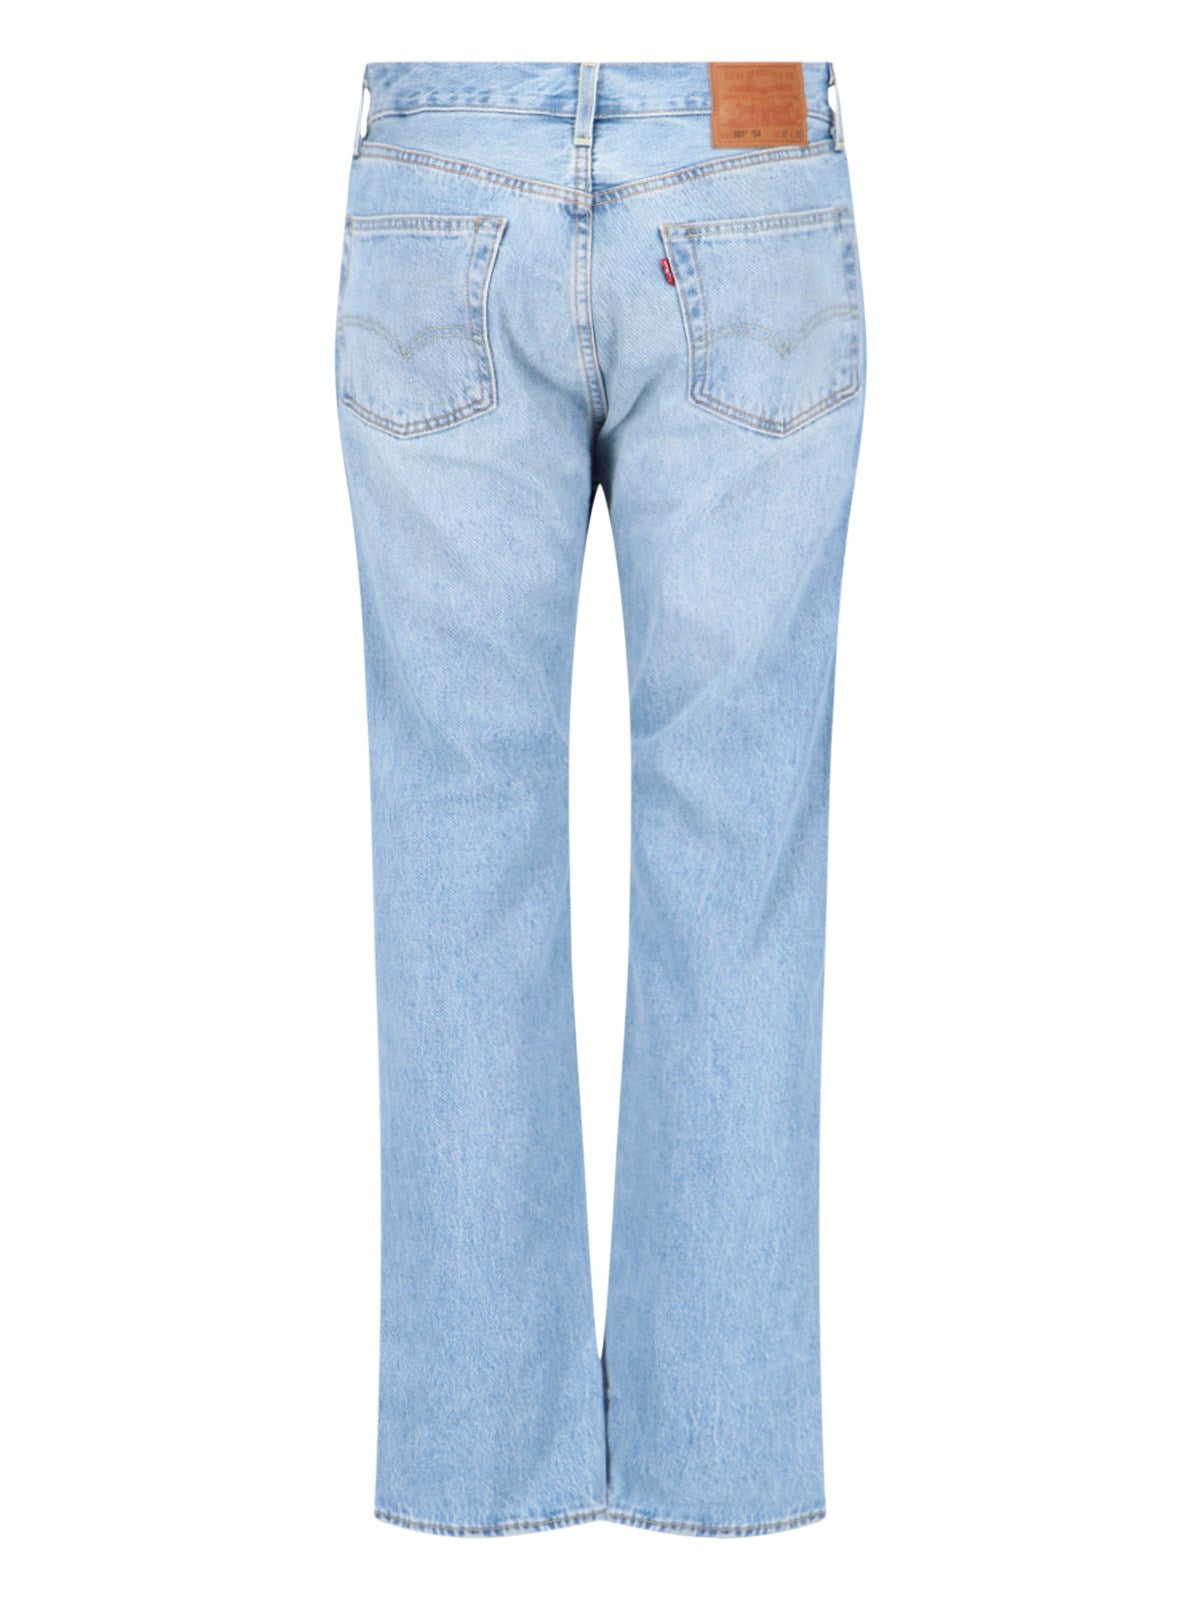 levi's strauss jeans "501"-Jeans dritti-Levi's strauss-jeans "501" levi's strauss, in denim azzurro, sbiancamenti, vita media, passanti cintura, chiusura bottoni, design cinque tasche, gamba dritta, orlo dritto. codice prodotto a4677 00061954 bright light composizione: 100% cotone dimensioni/vestibilità: regolare made in: vietnam - Dresso